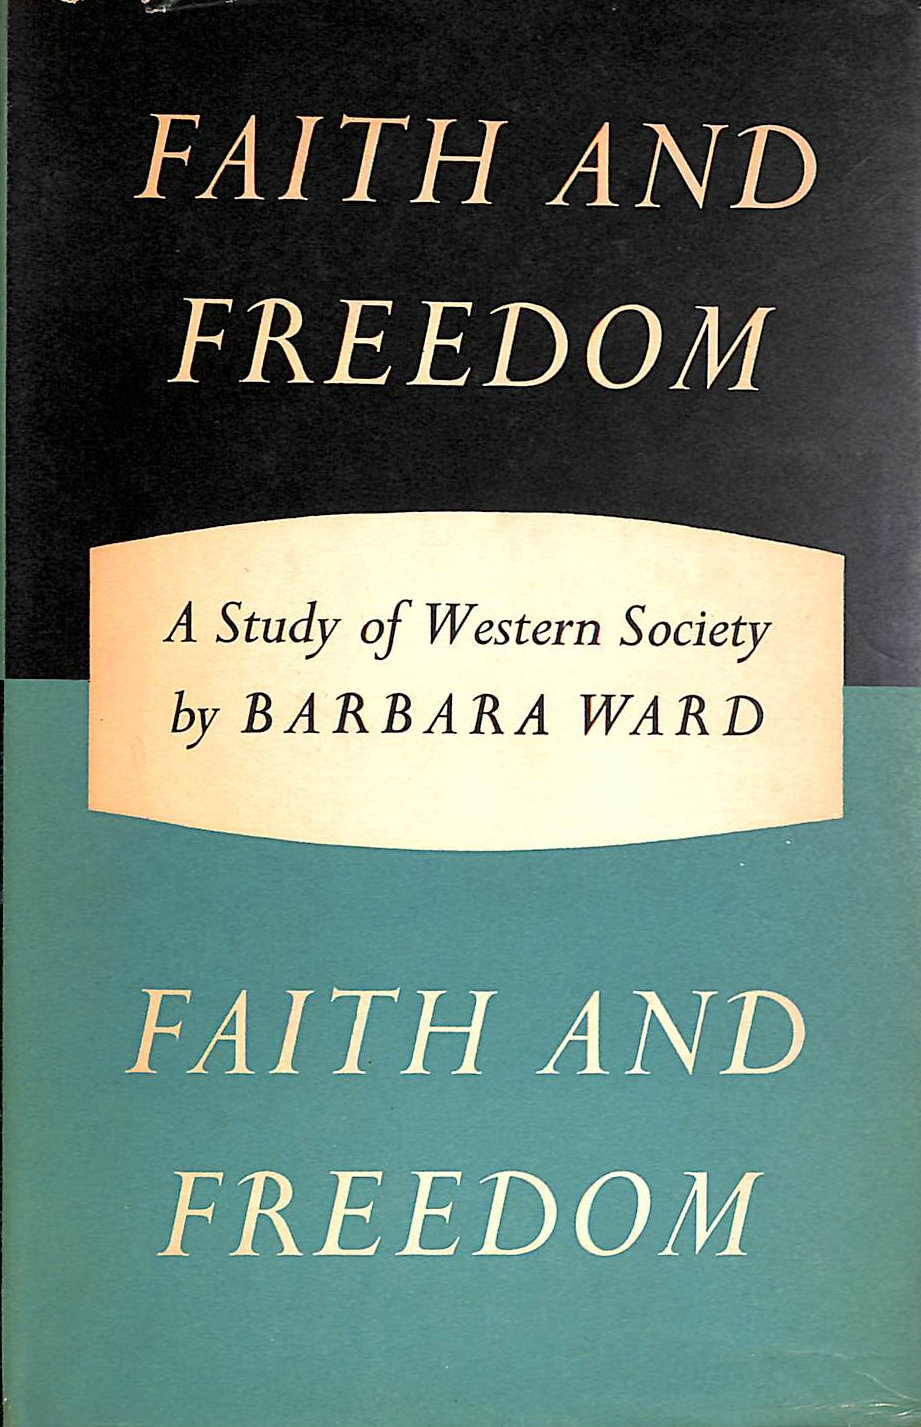 WARD, BARBARA - Faith and freedom